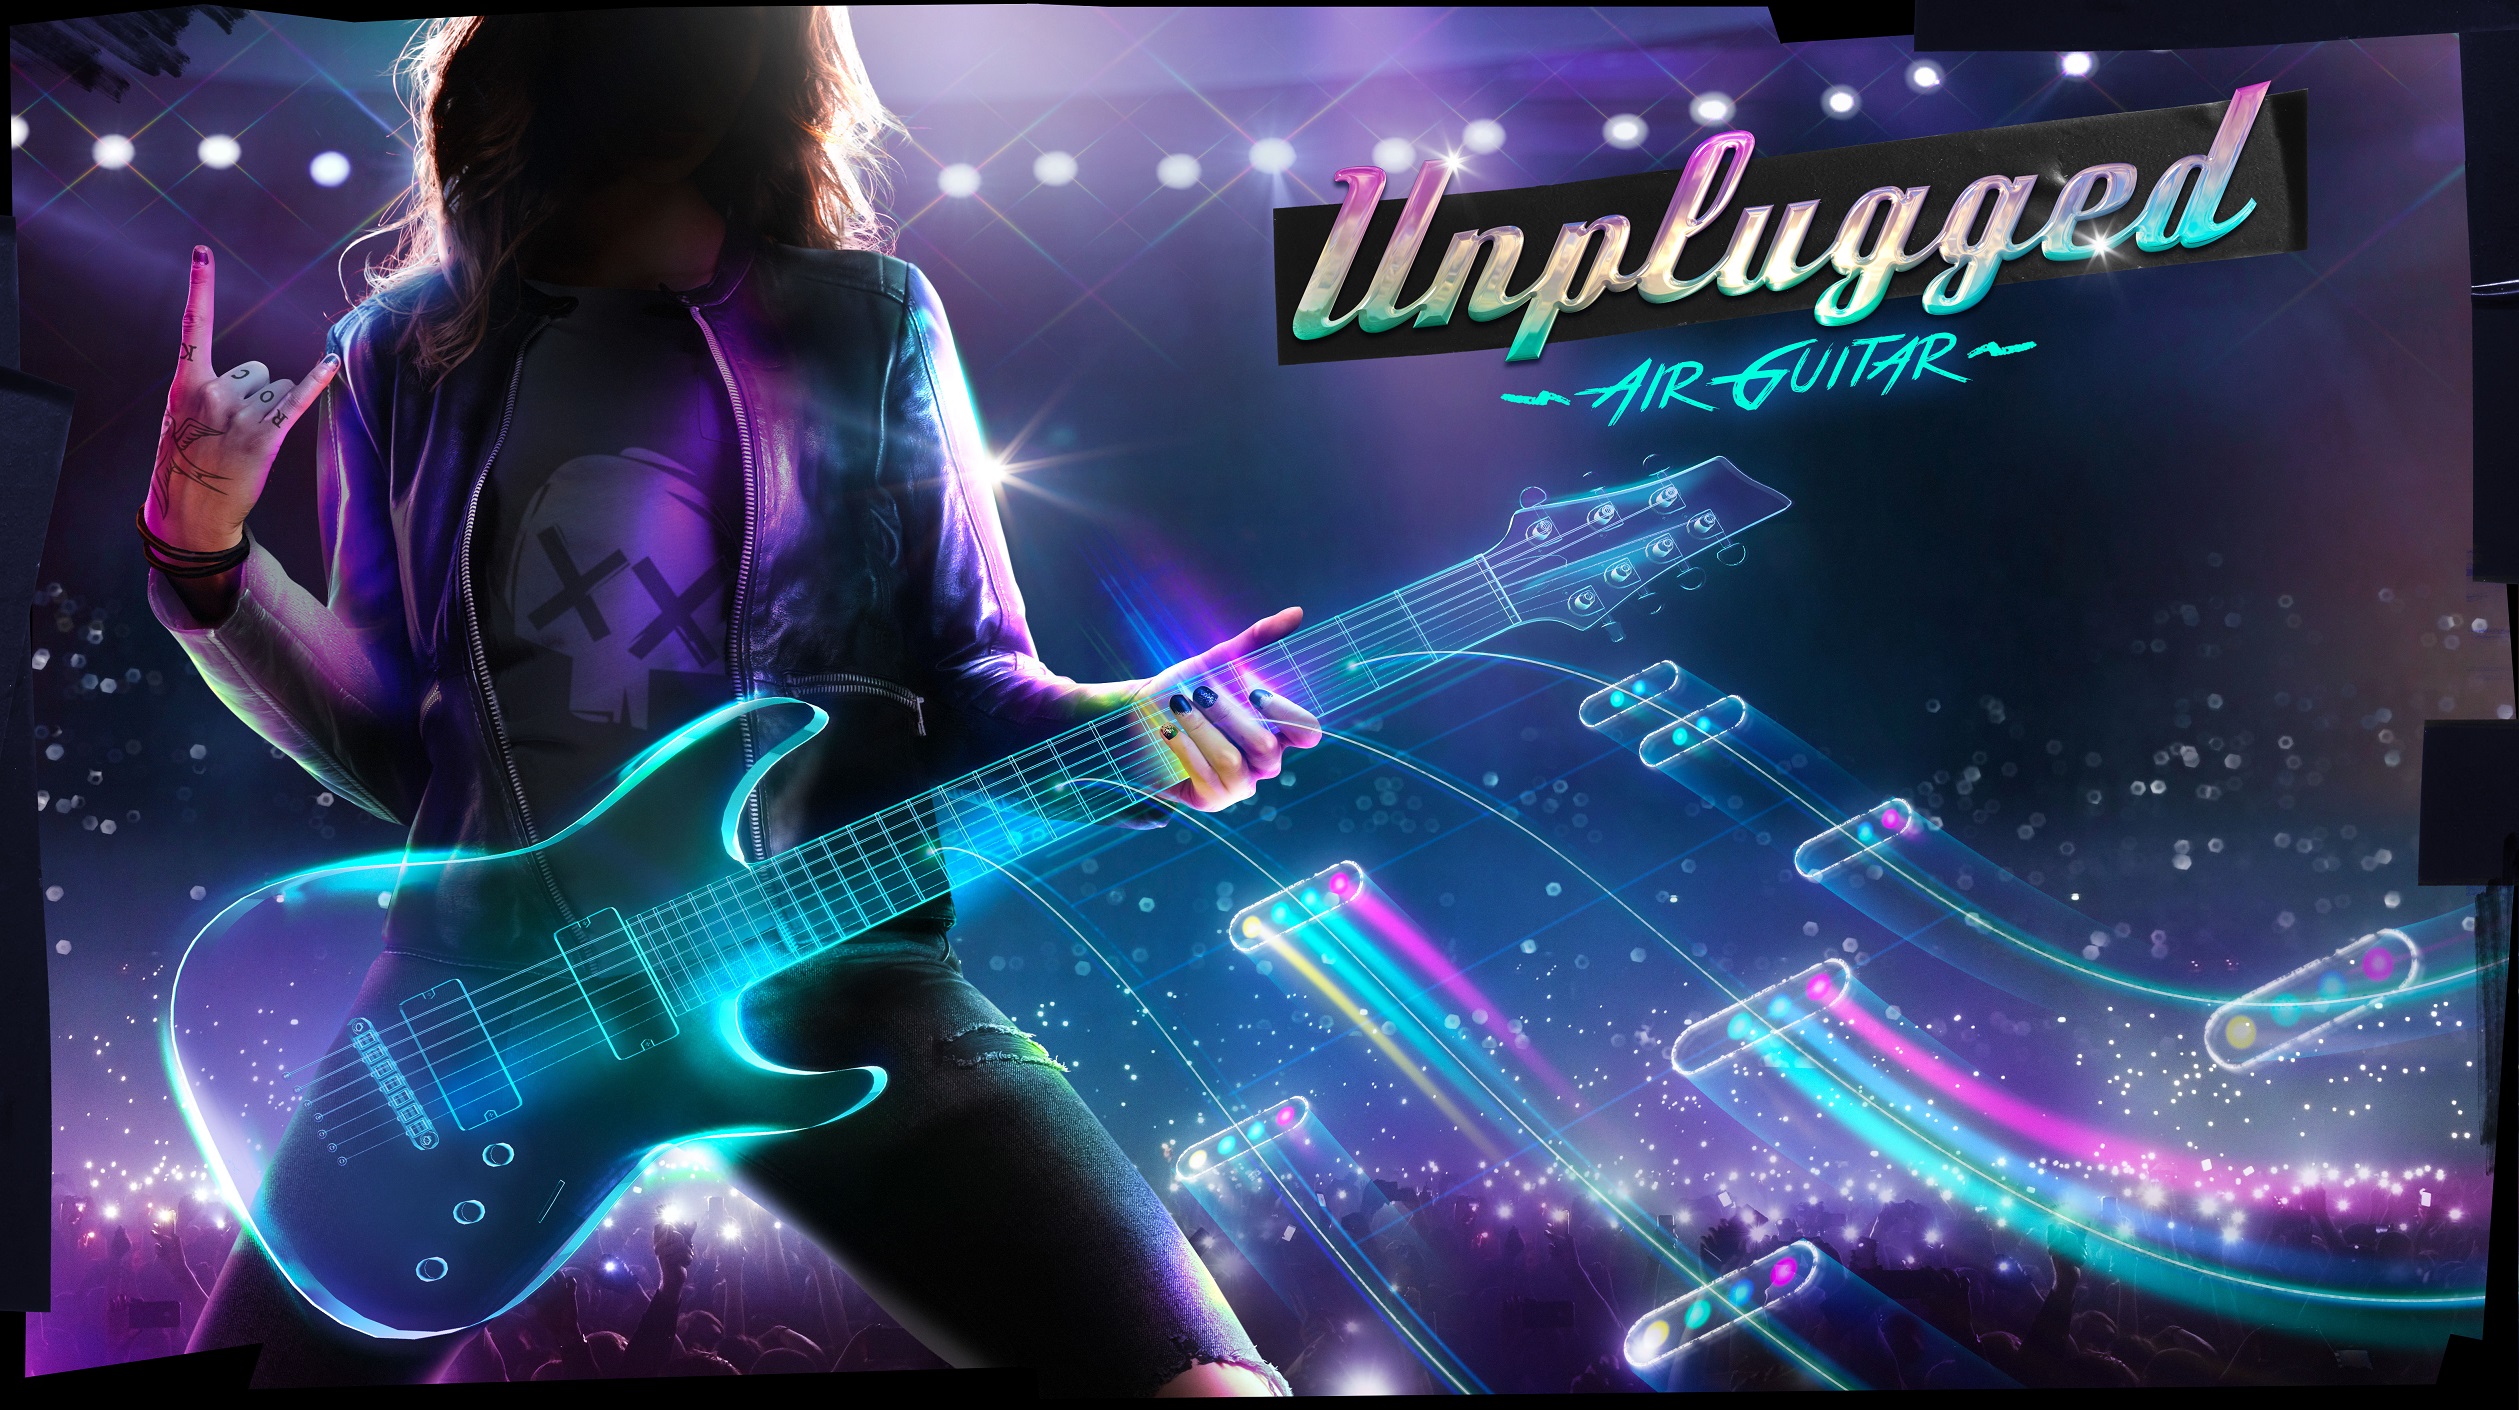 Unplugged confirma su listado completo de canciones